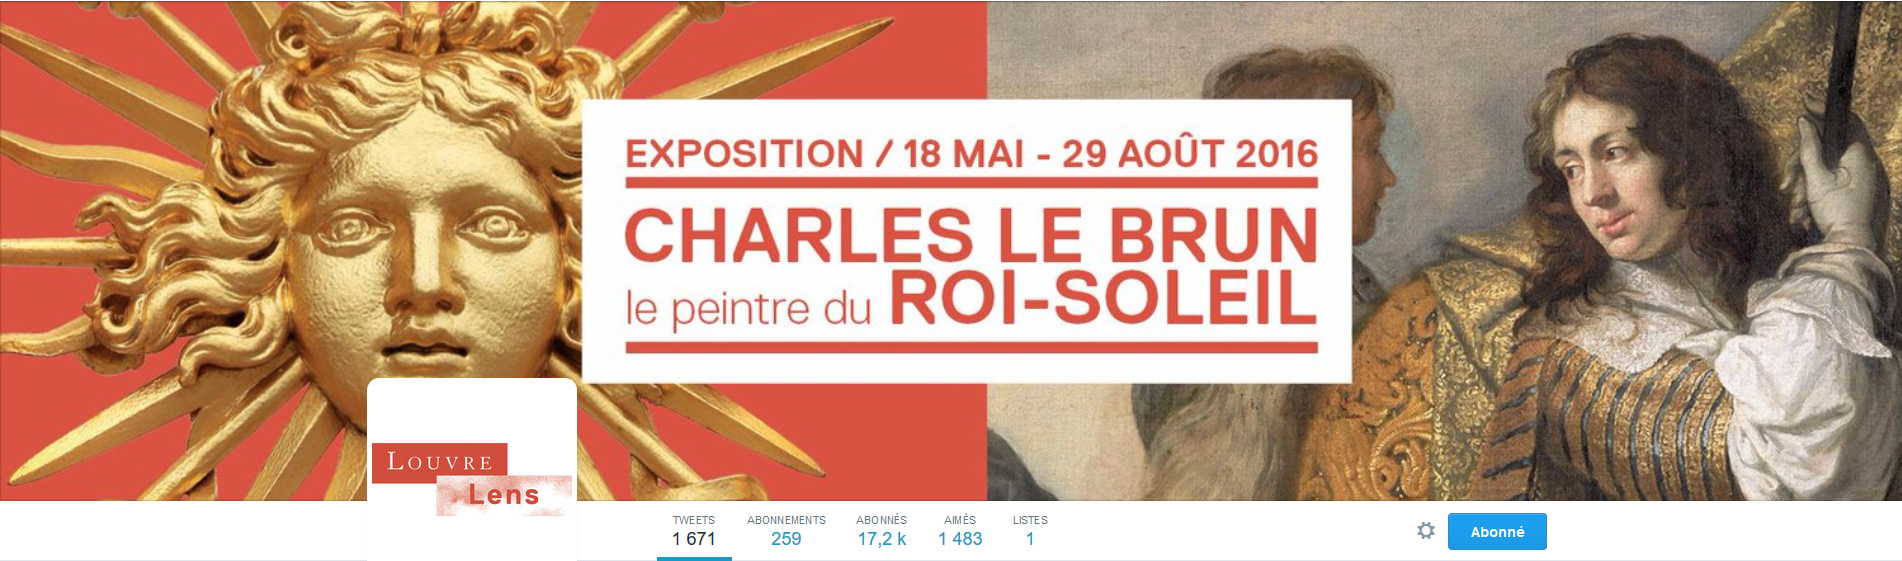 FireShot Screen Capture #272 - 'Musée du Louvre-Lens (@MuseeLouvreLens) I Twitter' - twitter_com_MuseeLouvreLens